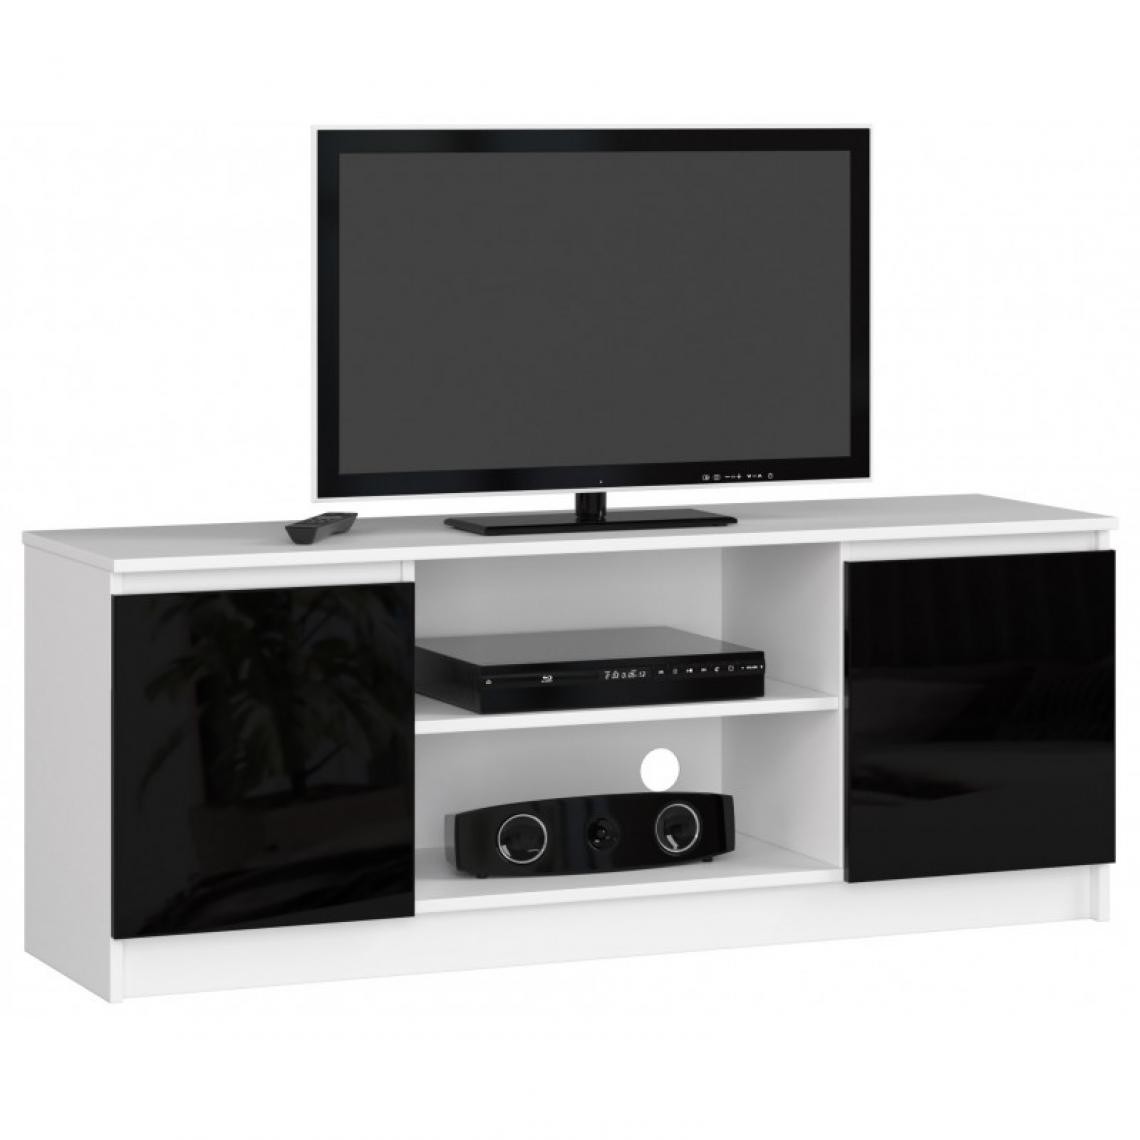 Hucoco - DUSK - Meuble TV style moderne salon - 140x55x40 - 2 portes+2 tablettes - Multimédia - Noir - Meubles TV, Hi-Fi